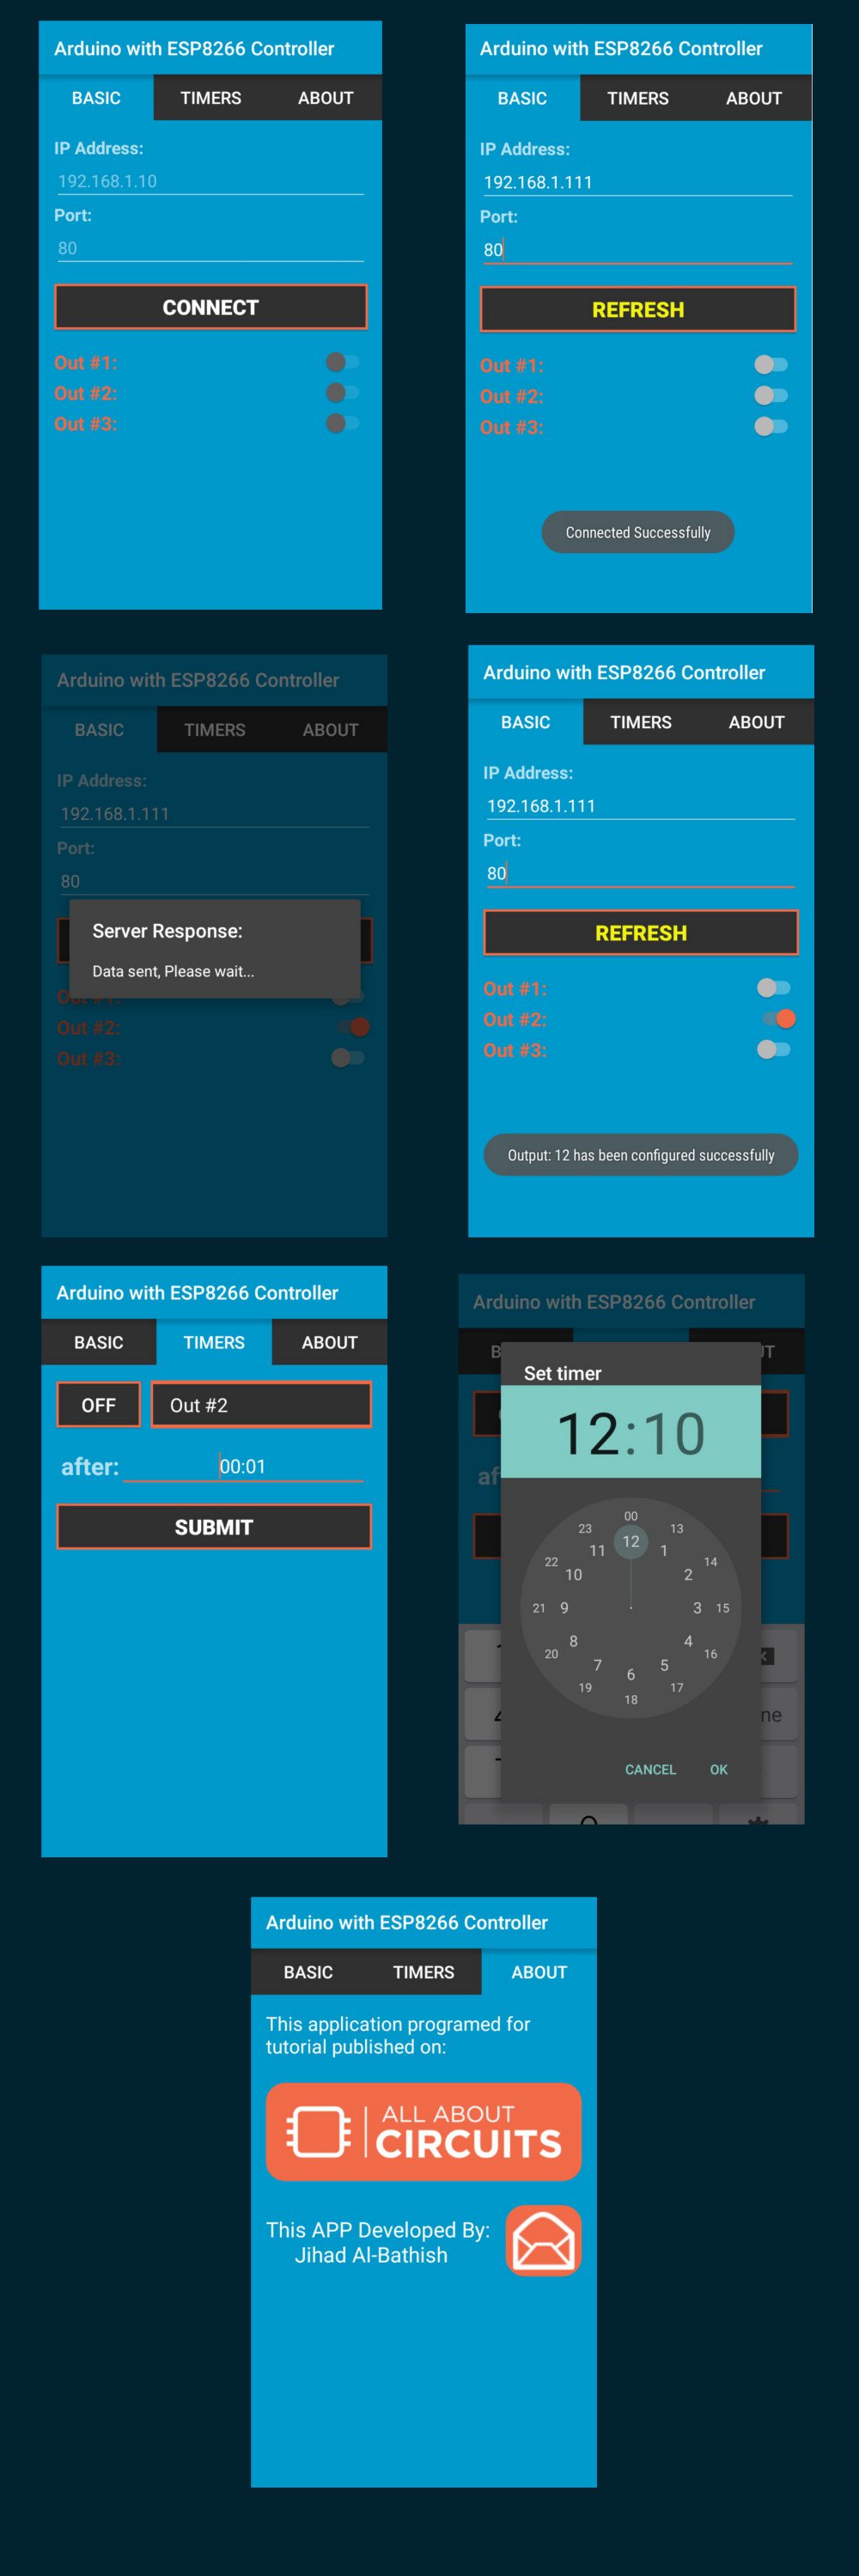 Скриншоты Android приложения для управления контроллером на Arduino и ESP8266